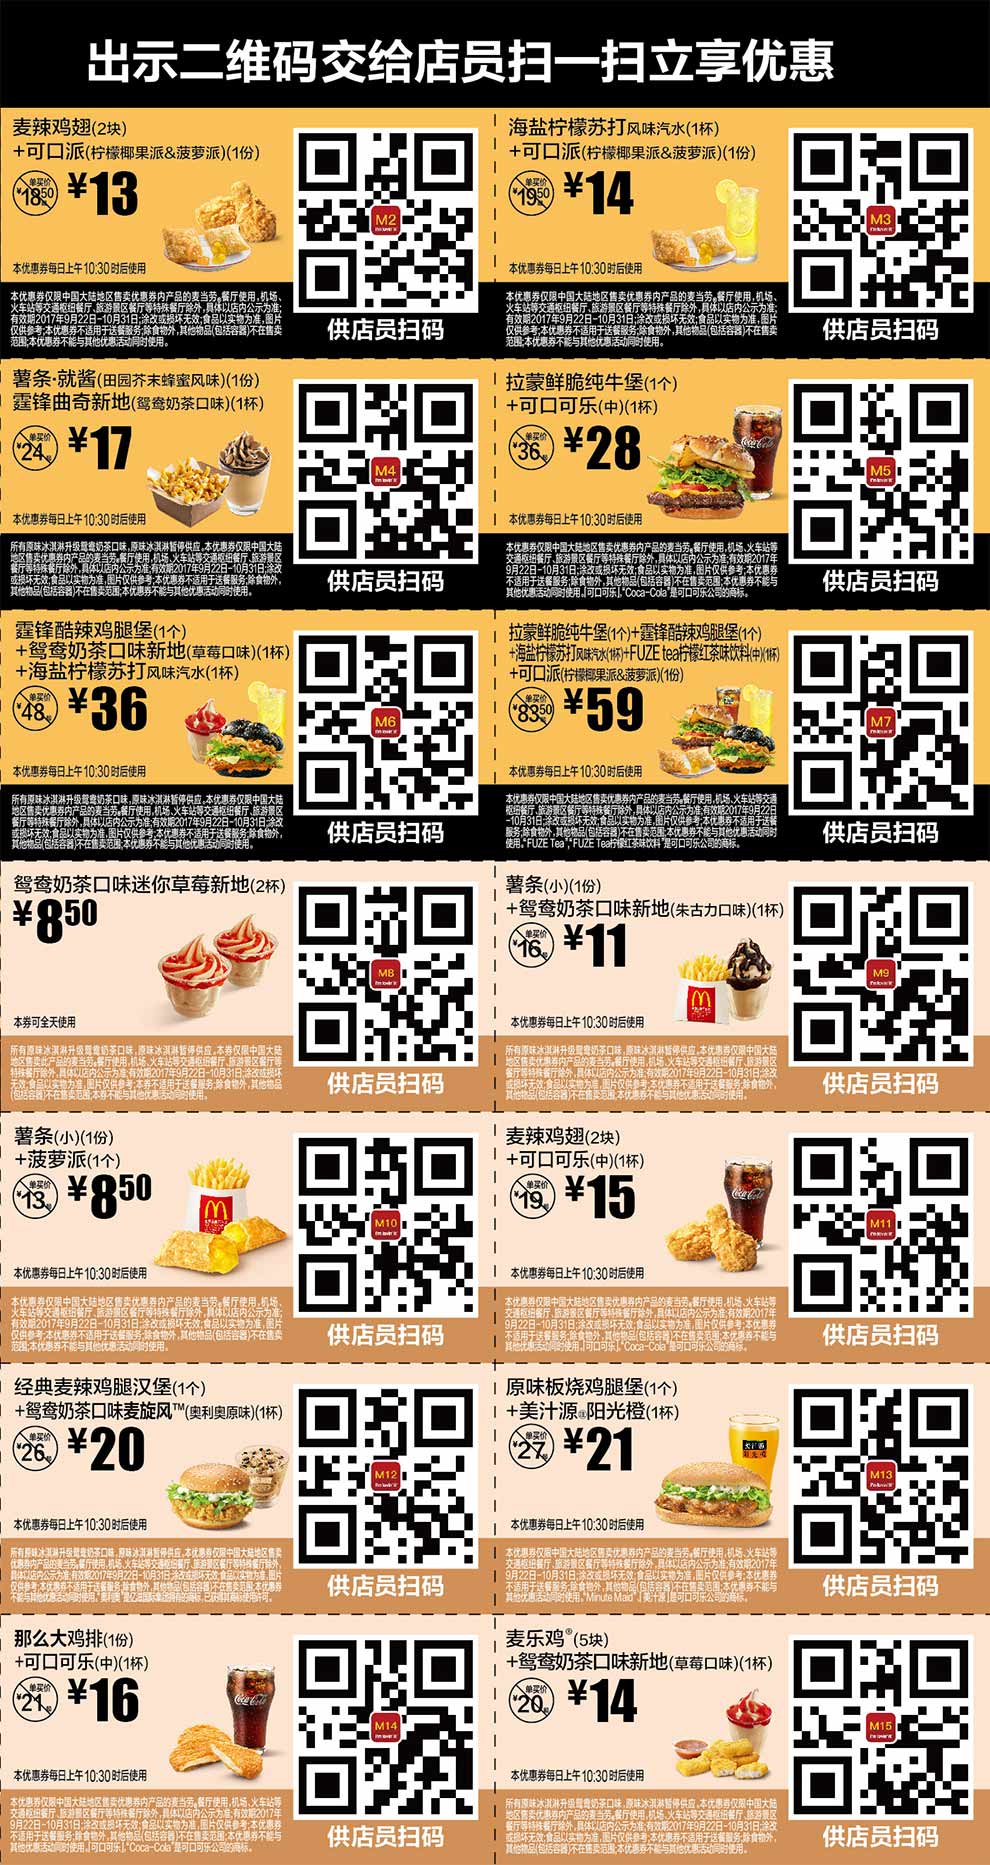 2017年9月10月麦当劳优惠券手机版整张版本，点餐出示给店员扫码享优惠价